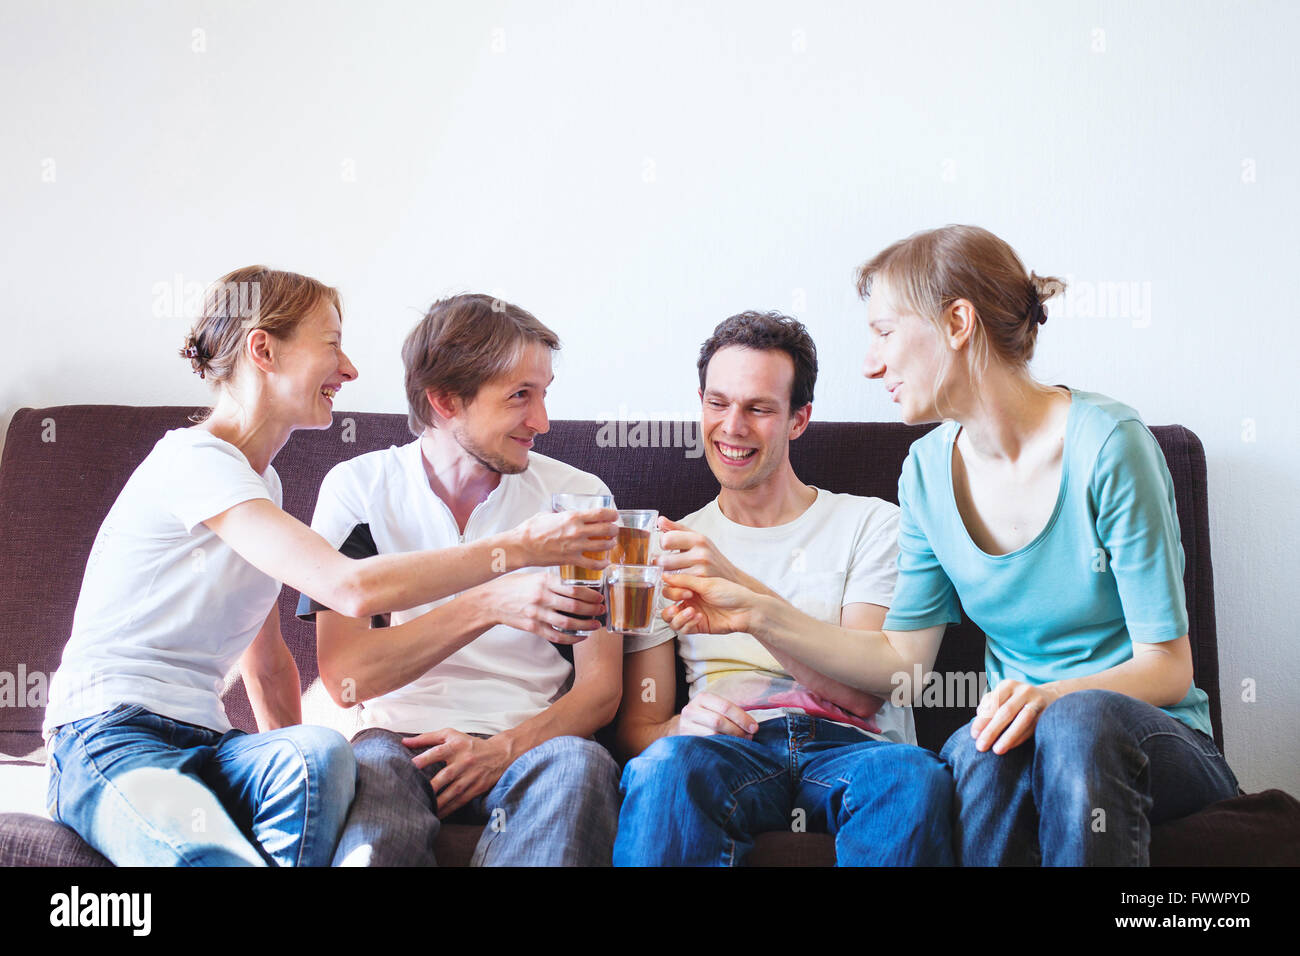 Gruppe von Freunden anfeuern zu Hause glücklich lächelnde Menschen mit Getränken, Exemplar jung Stockfoto